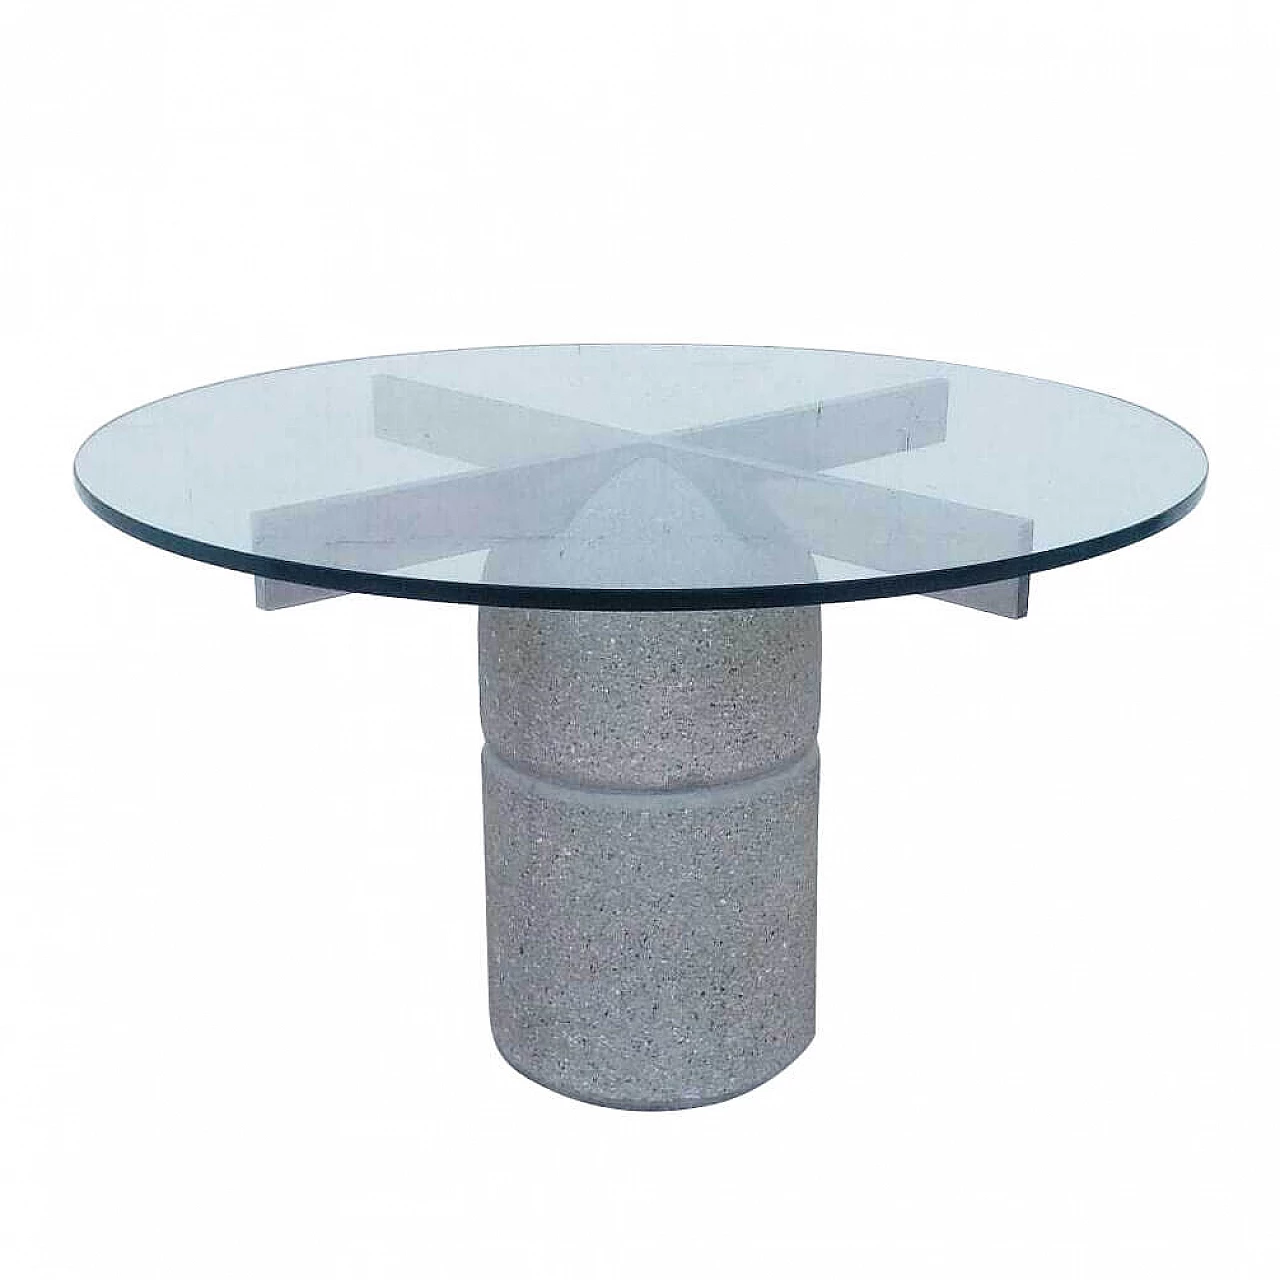 Paracarro table by Giovanni Offredi for Saporiti, 70s 1201545